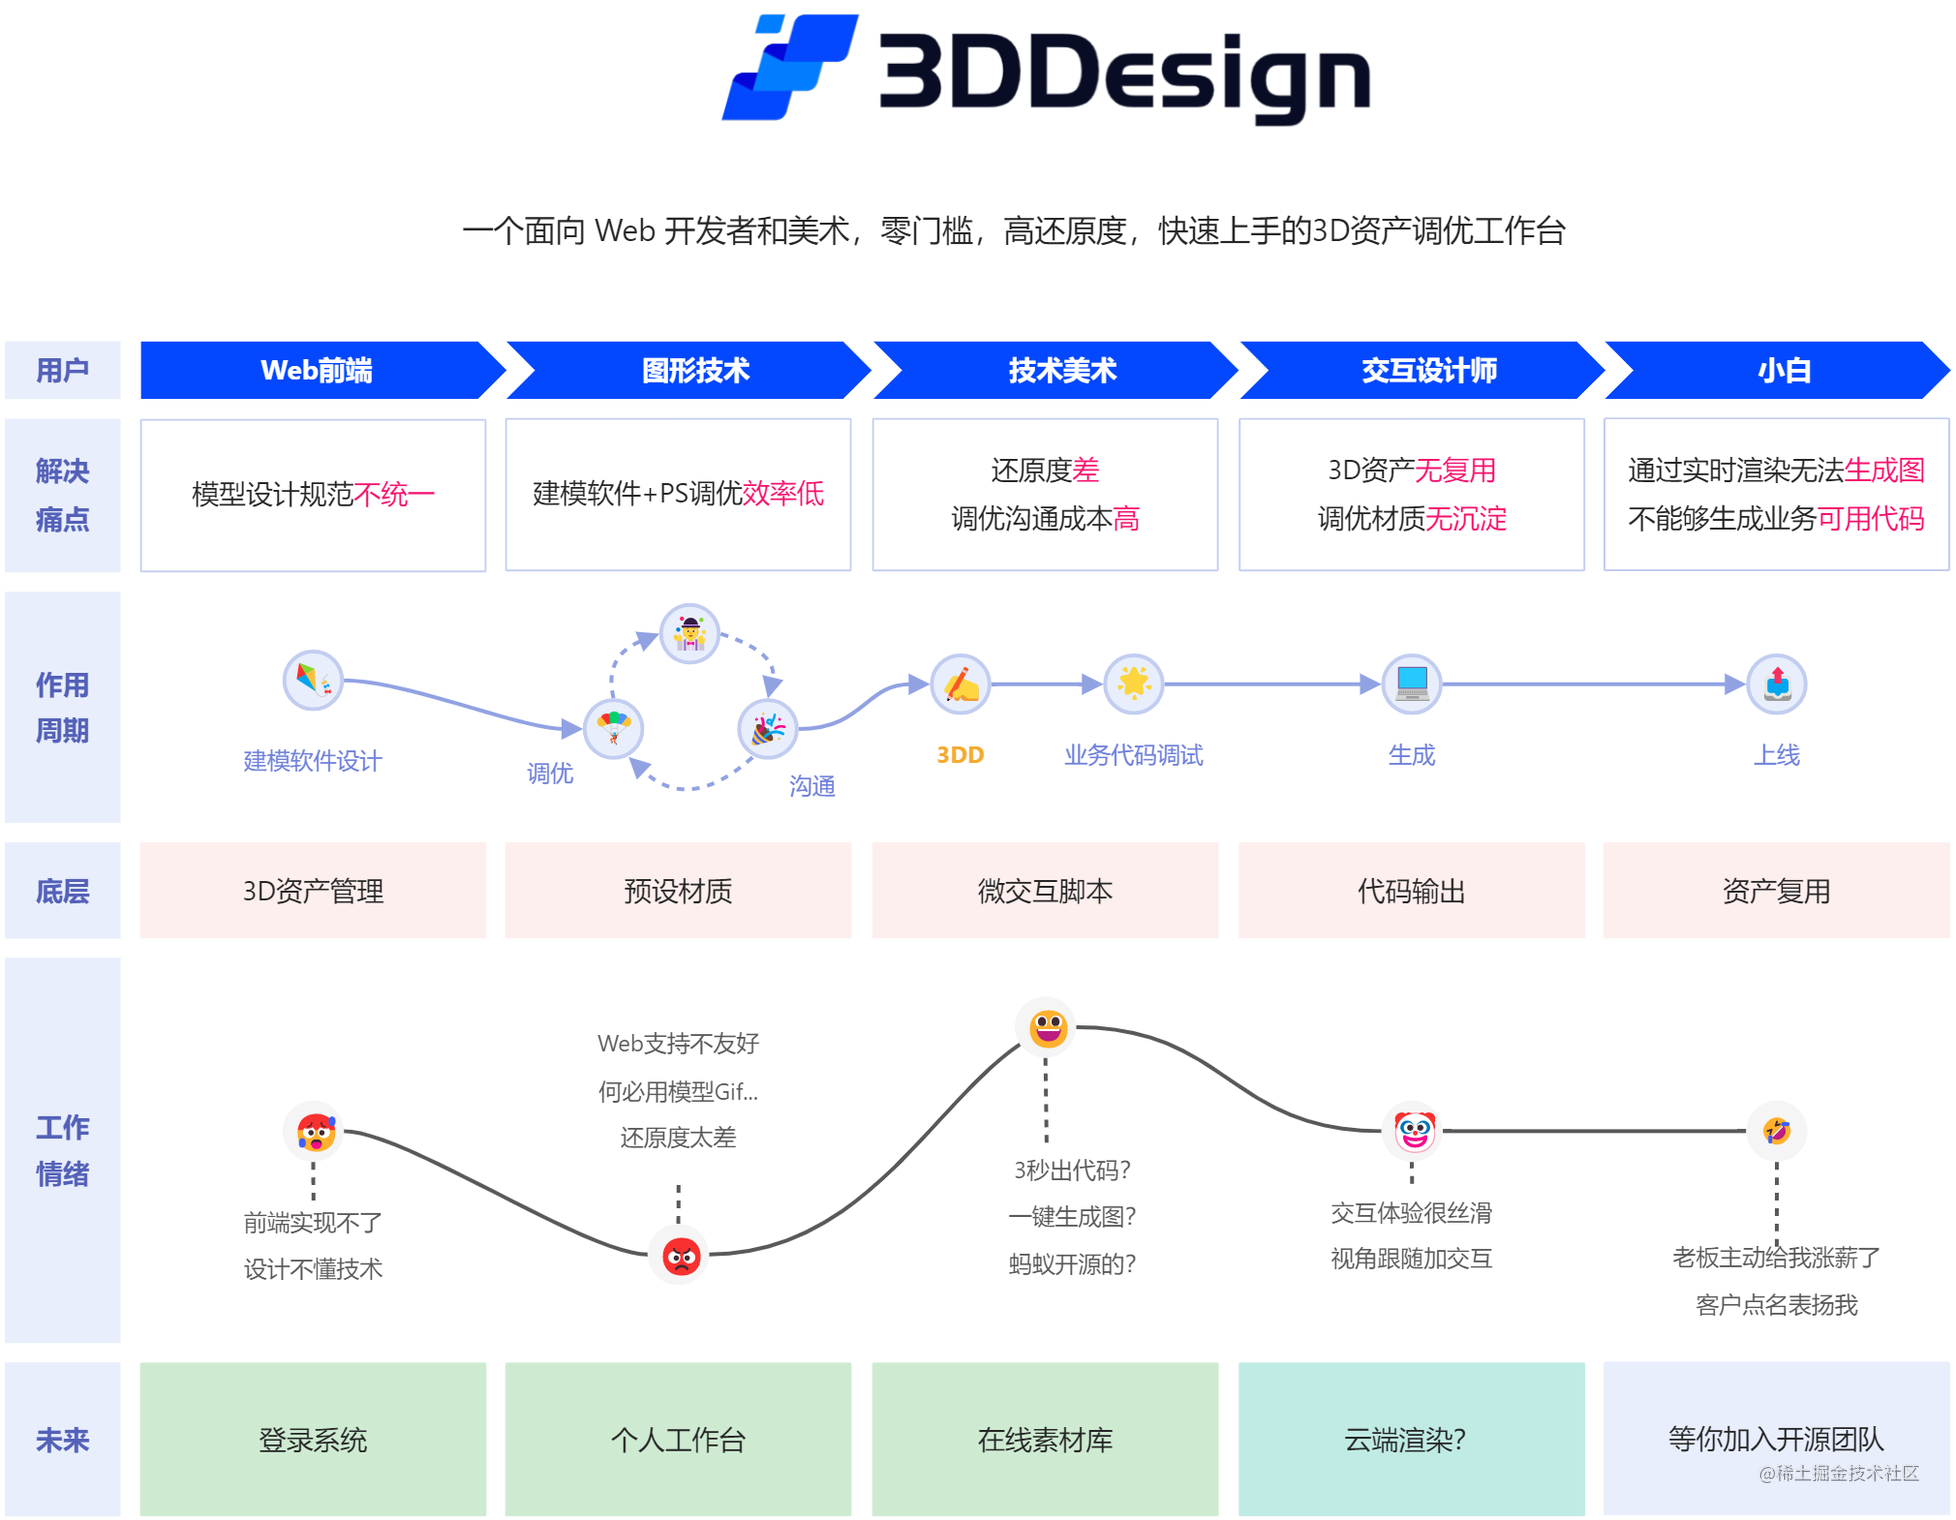 3DD的架构设计-架构设计